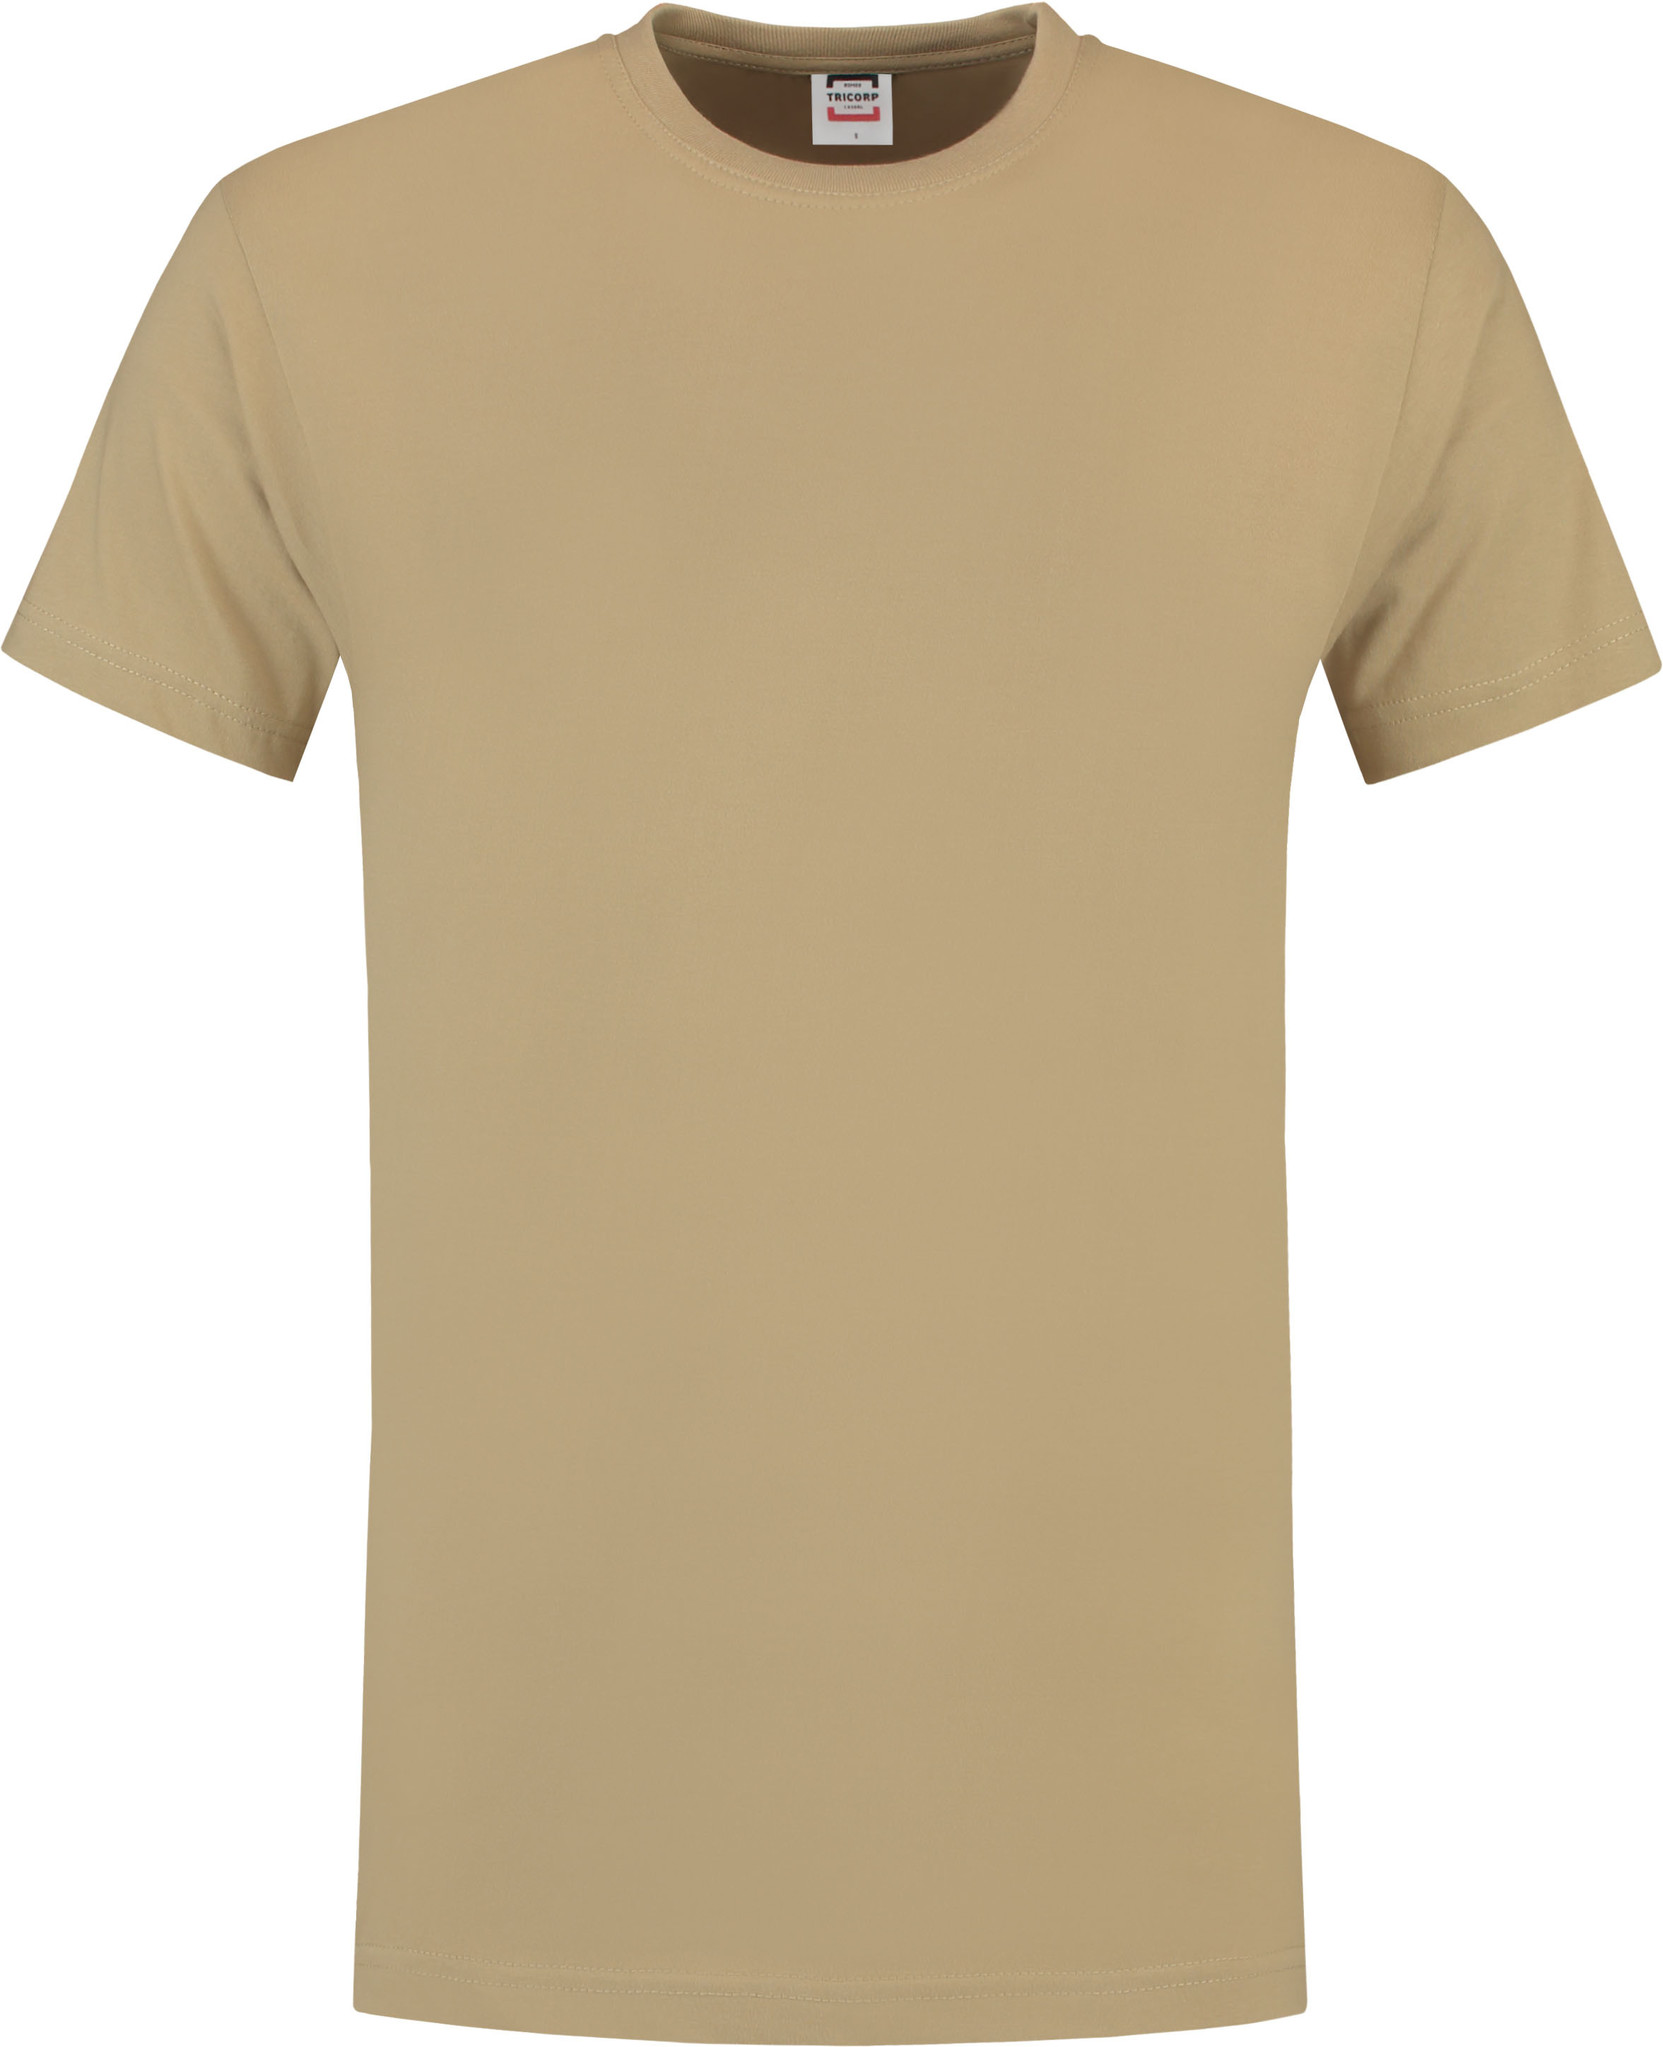 T-shirt T190 in kwaliteit in diverse kleuren